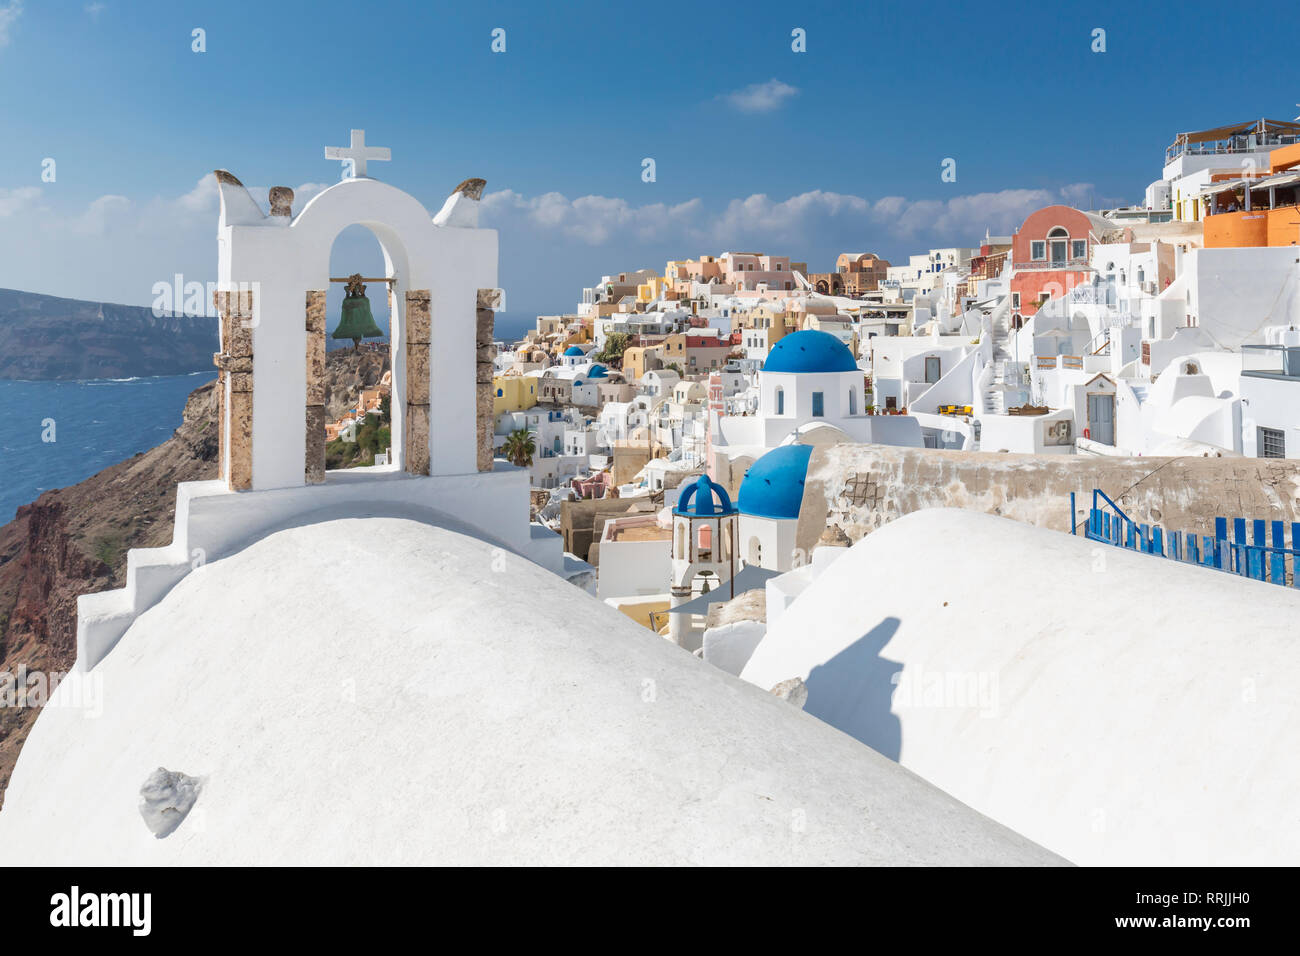 Blick auf die blauen Kuppeln Kirchen und das Dorf Oia, Santorini, Ägäische Inseln, Kykladen, Inseln der Ägäis, griechische Inseln, Griechenland, Europa Stockfoto